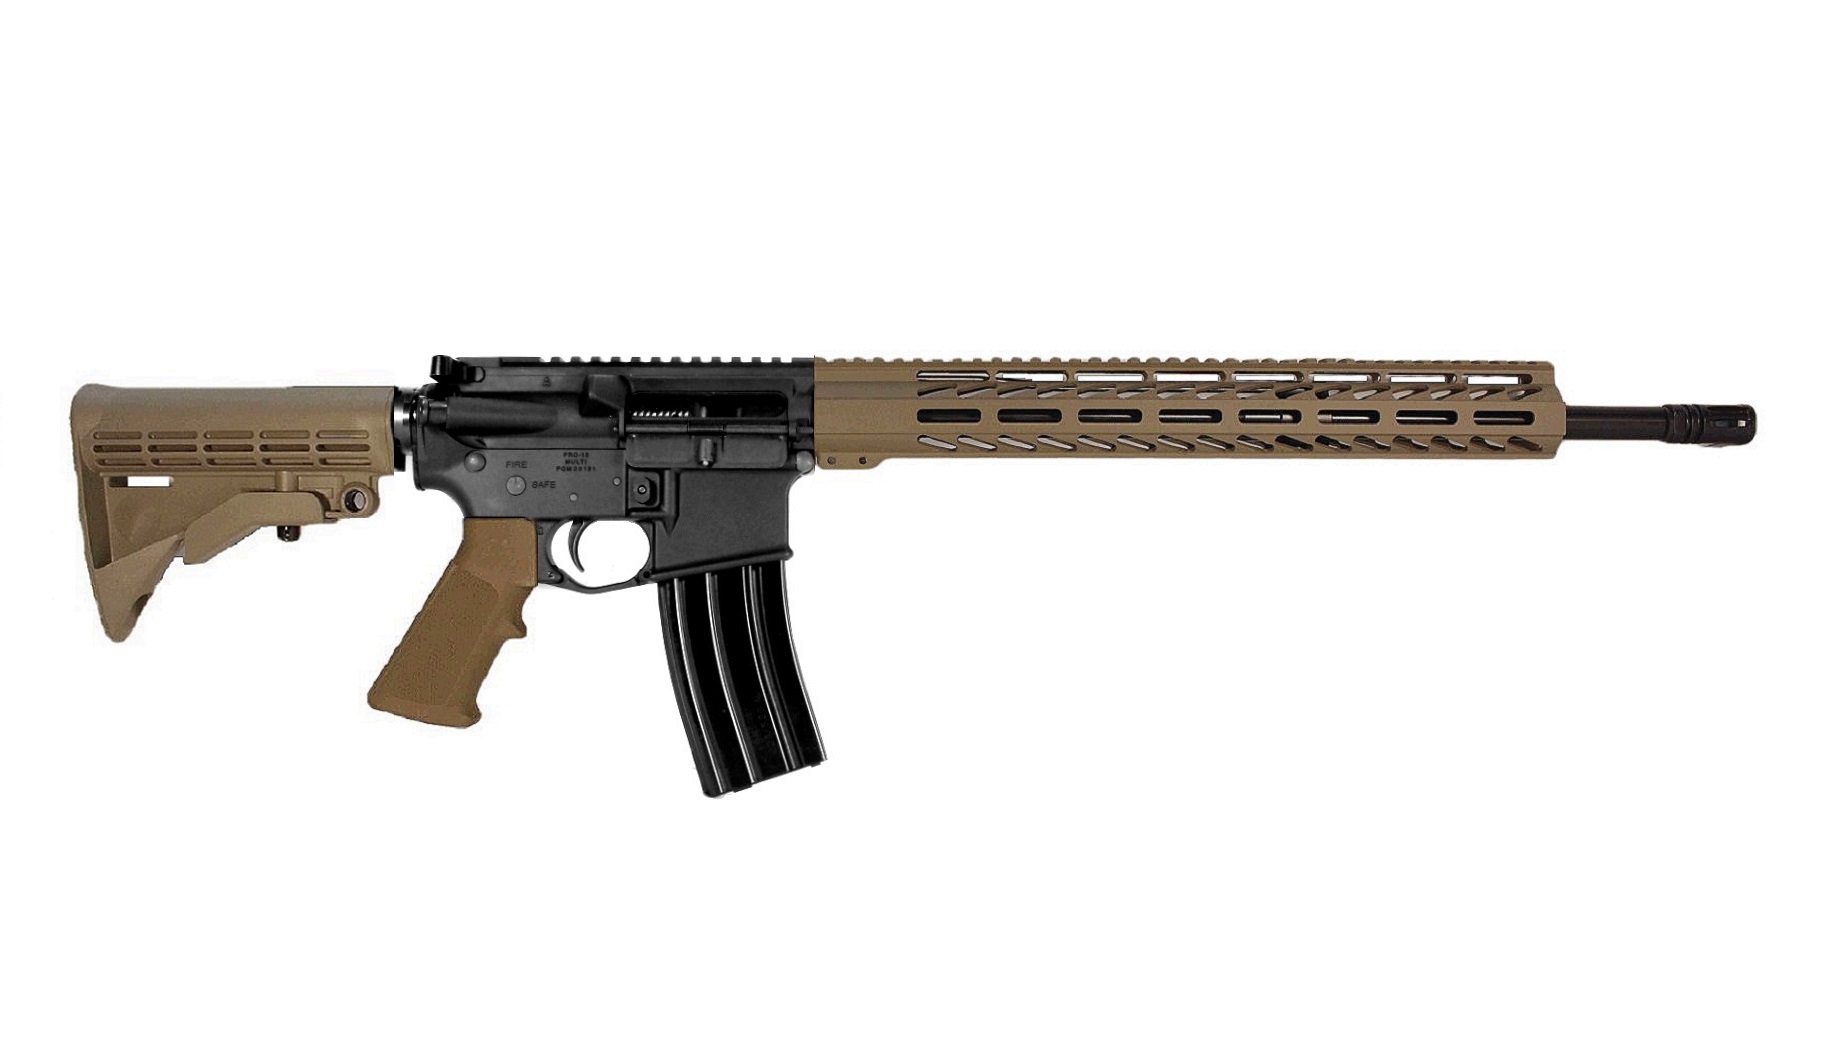 18 inch 458 Socom AR15 Rifle in BLK/FDE